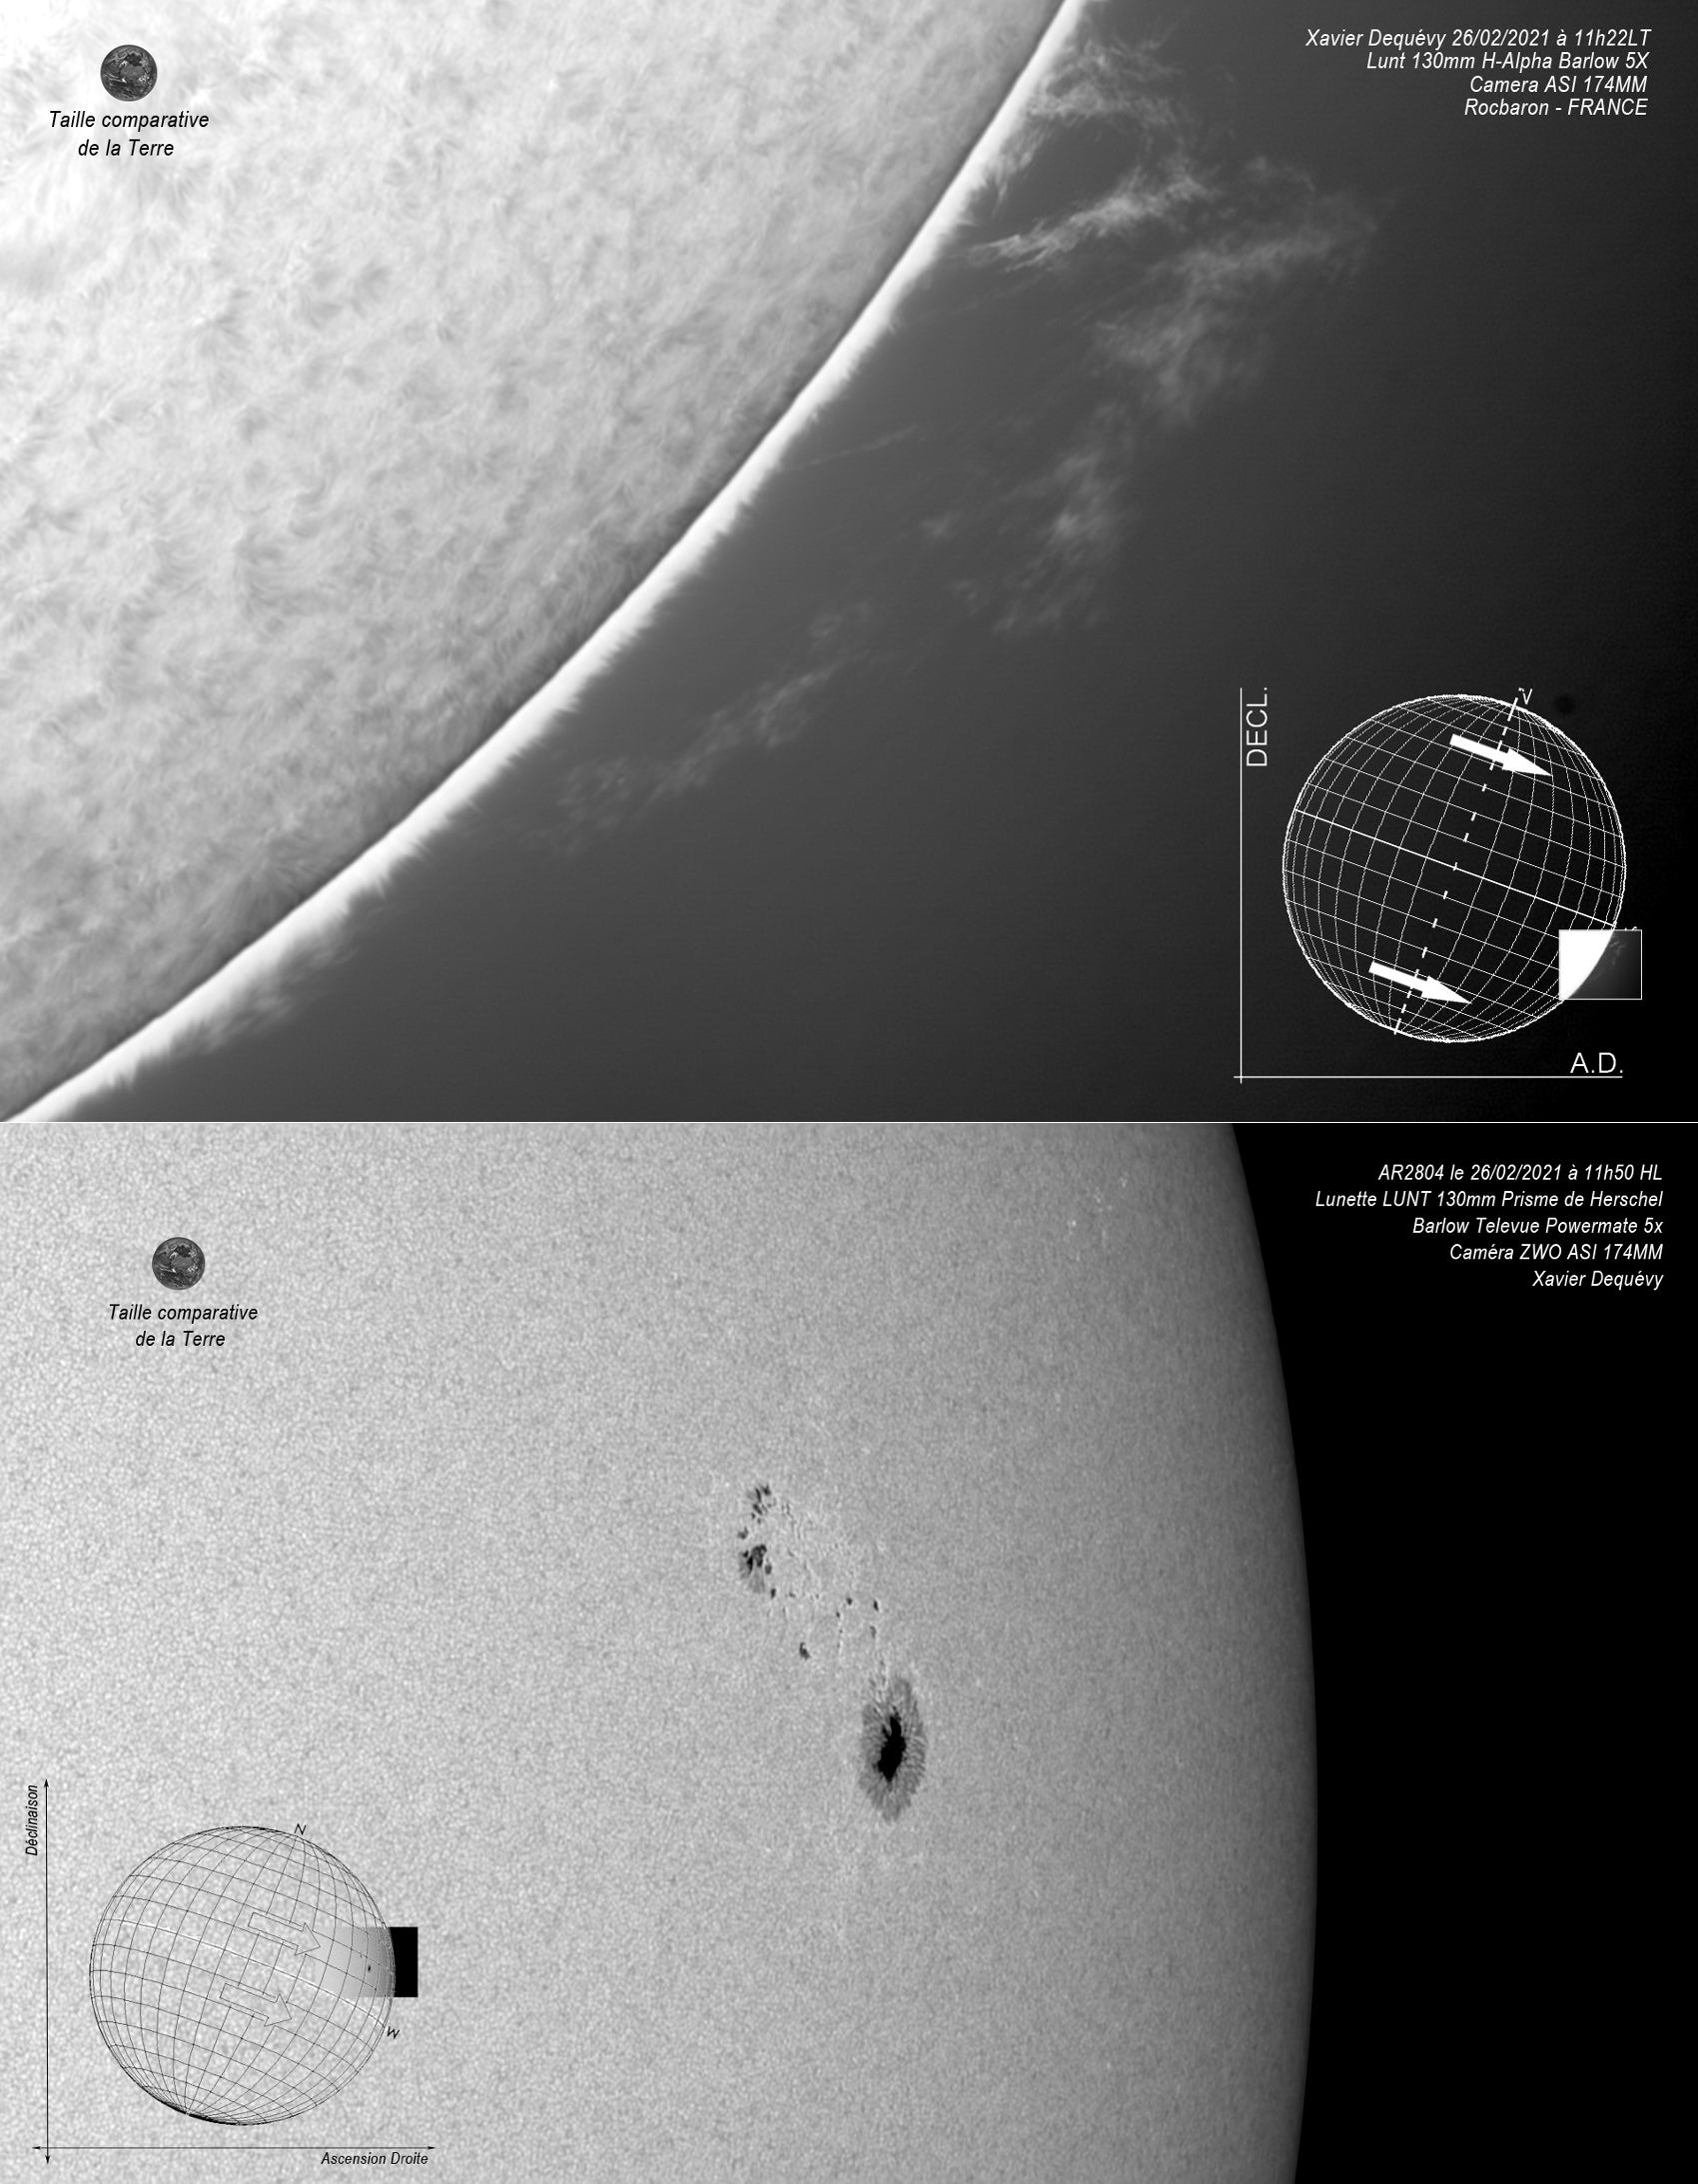 LUNT LS130MT/B1800 Télescope APO polyvalent pour le Soleil + la voûte céleste